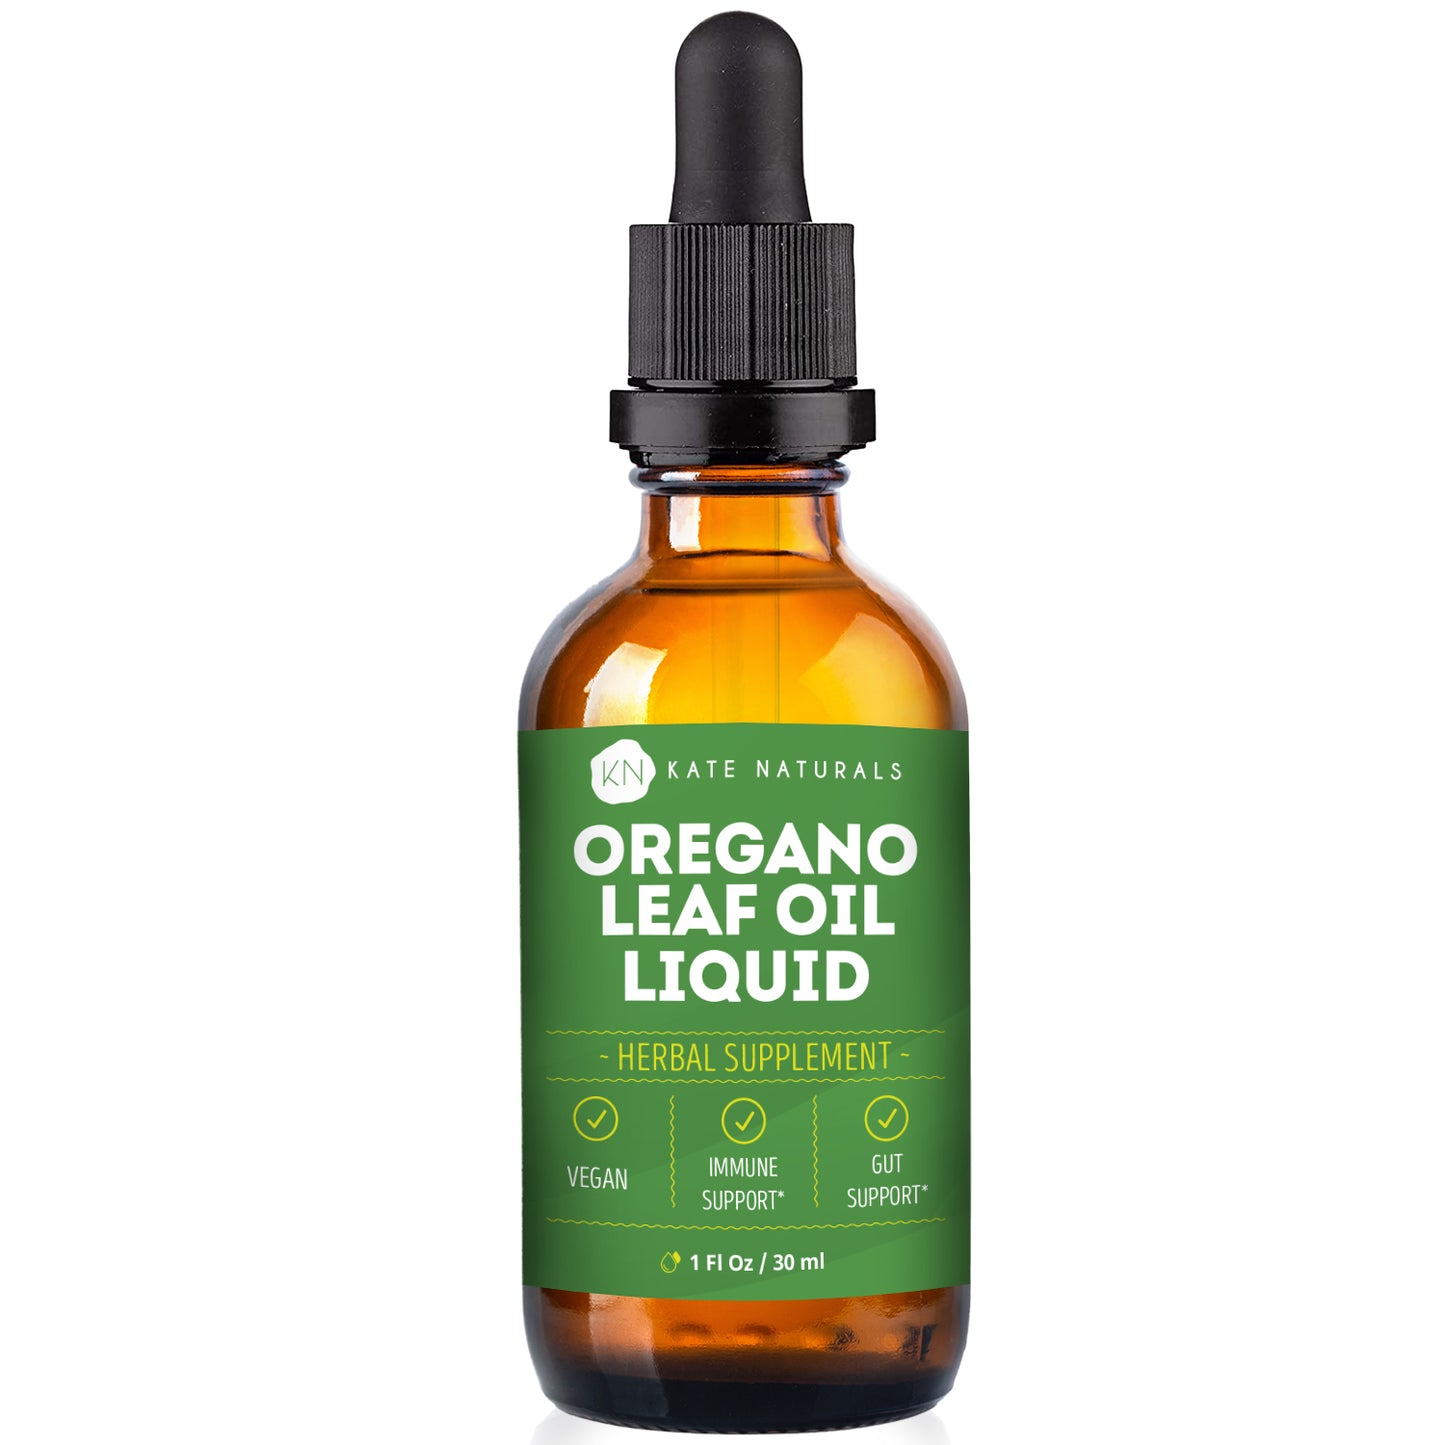 Oregano Leaf Oil Liquid